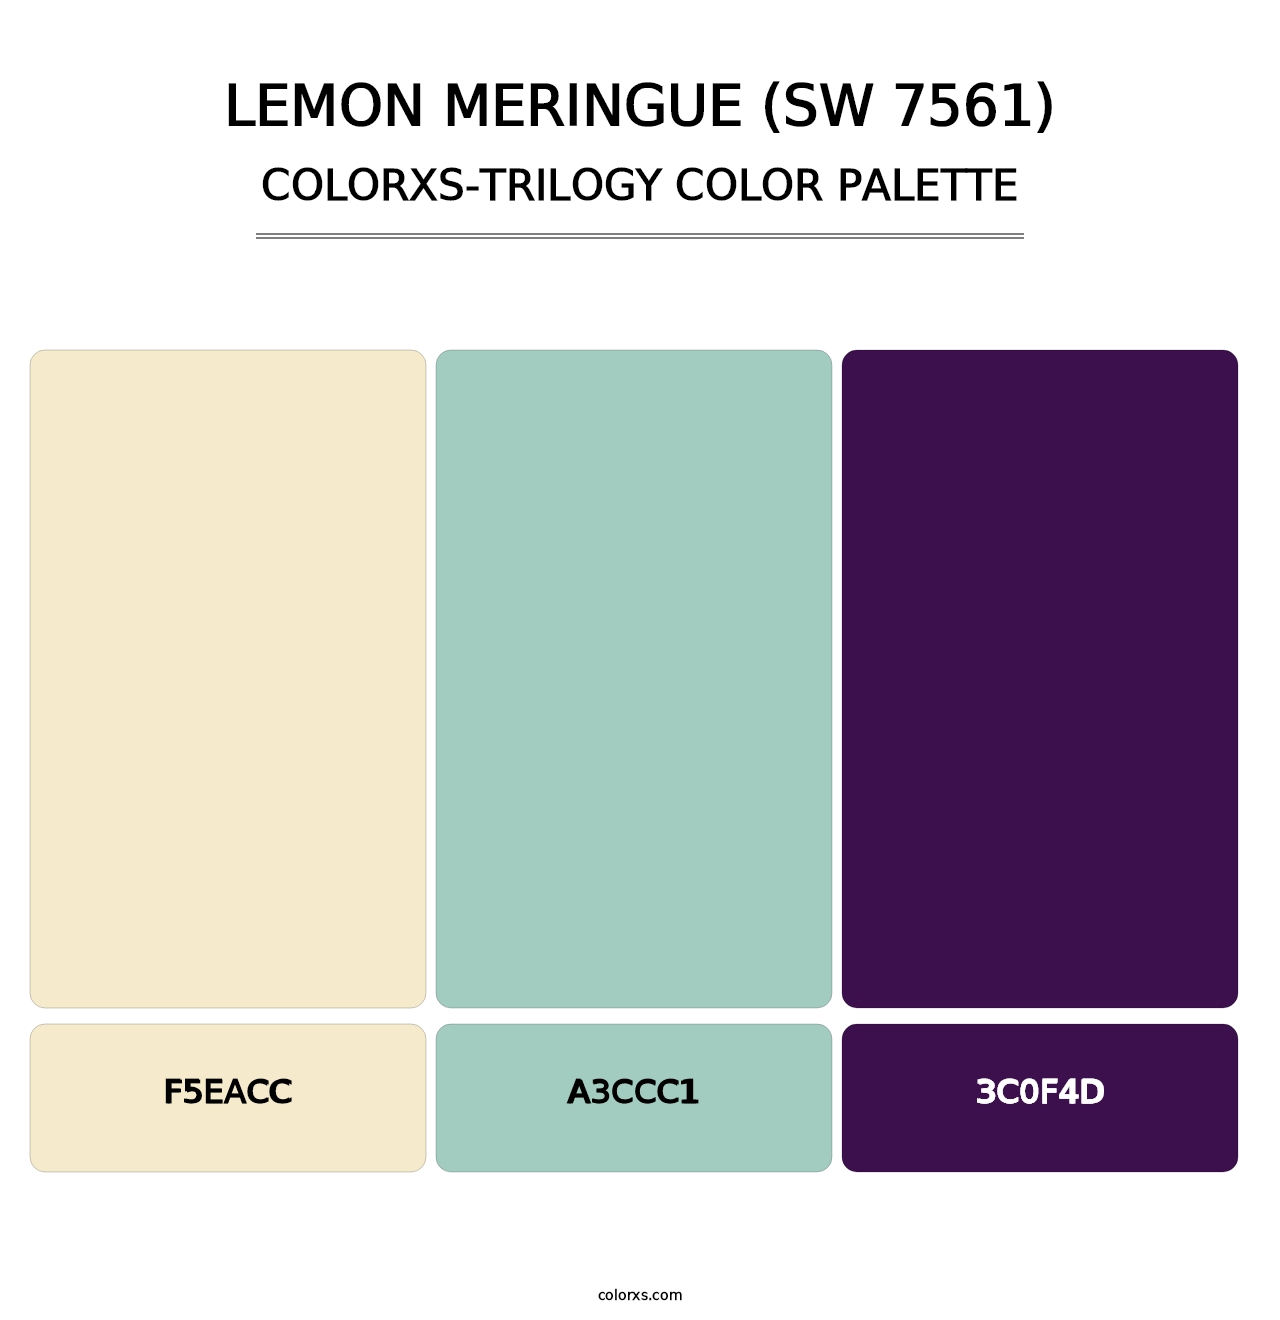 Lemon Meringue (SW 7561) - Colorxs Trilogy Palette